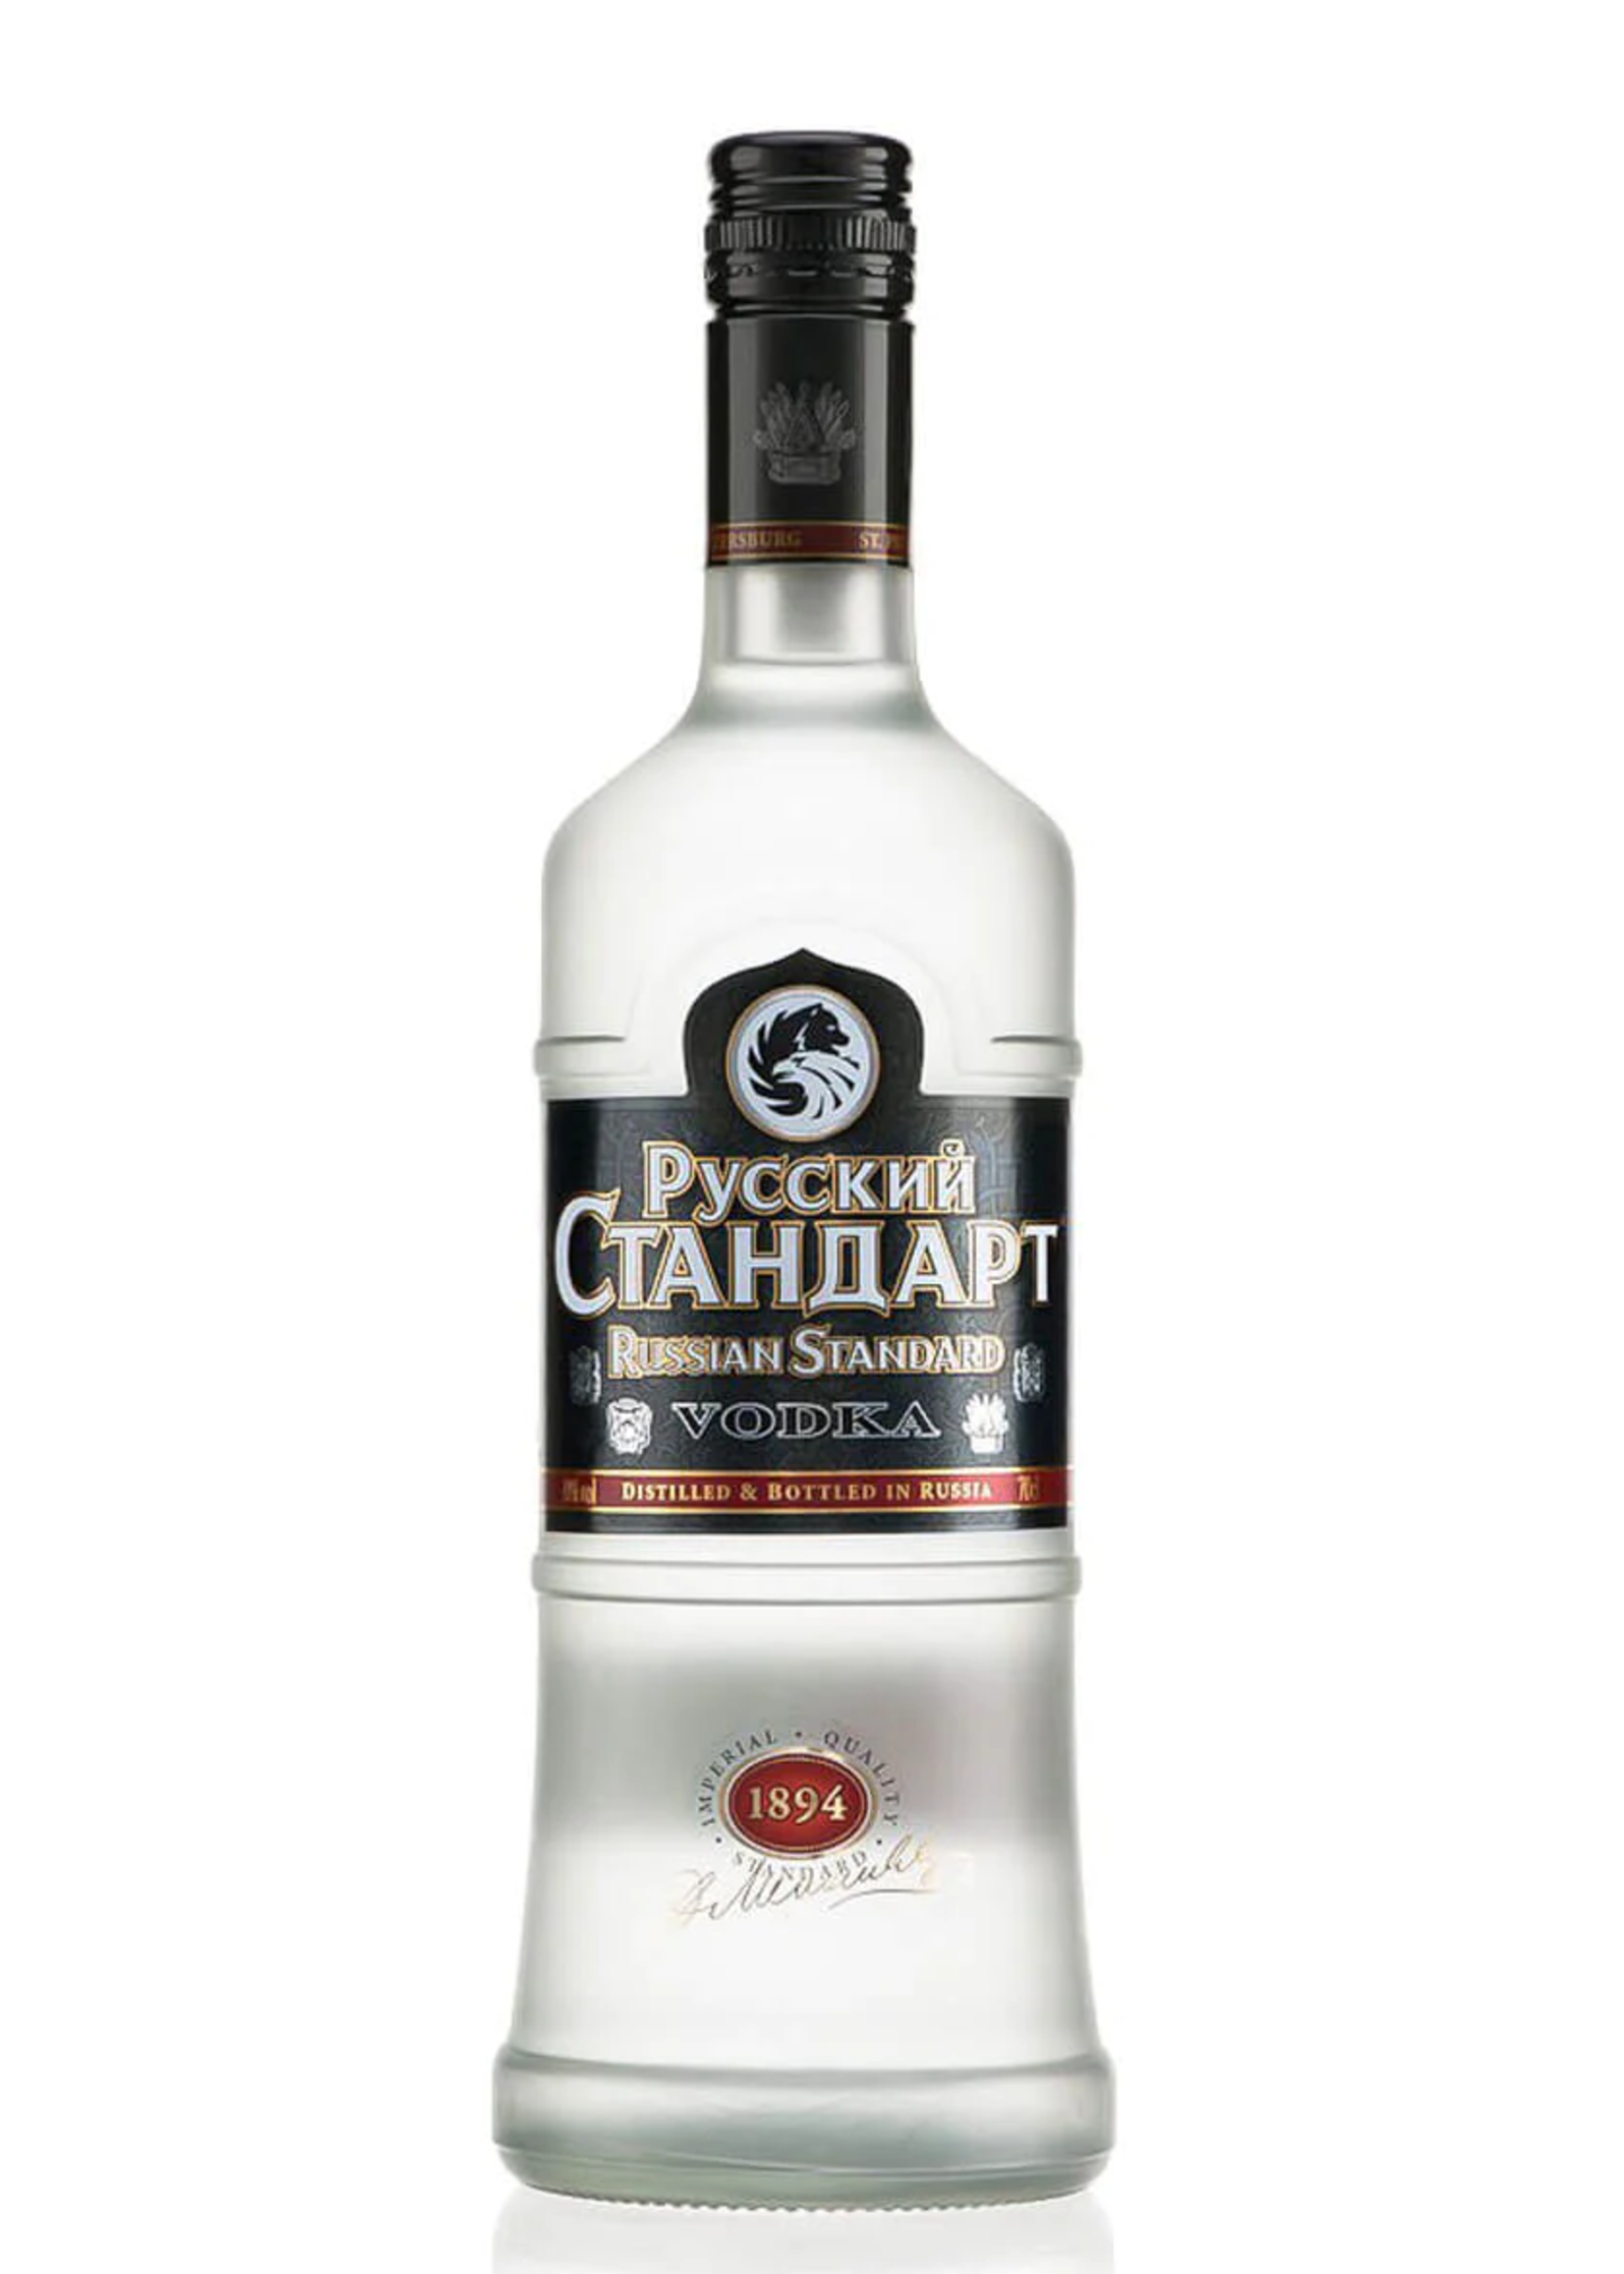 Pyccknn Ctahoapt Vodka 80Proof 1.75 Ltr